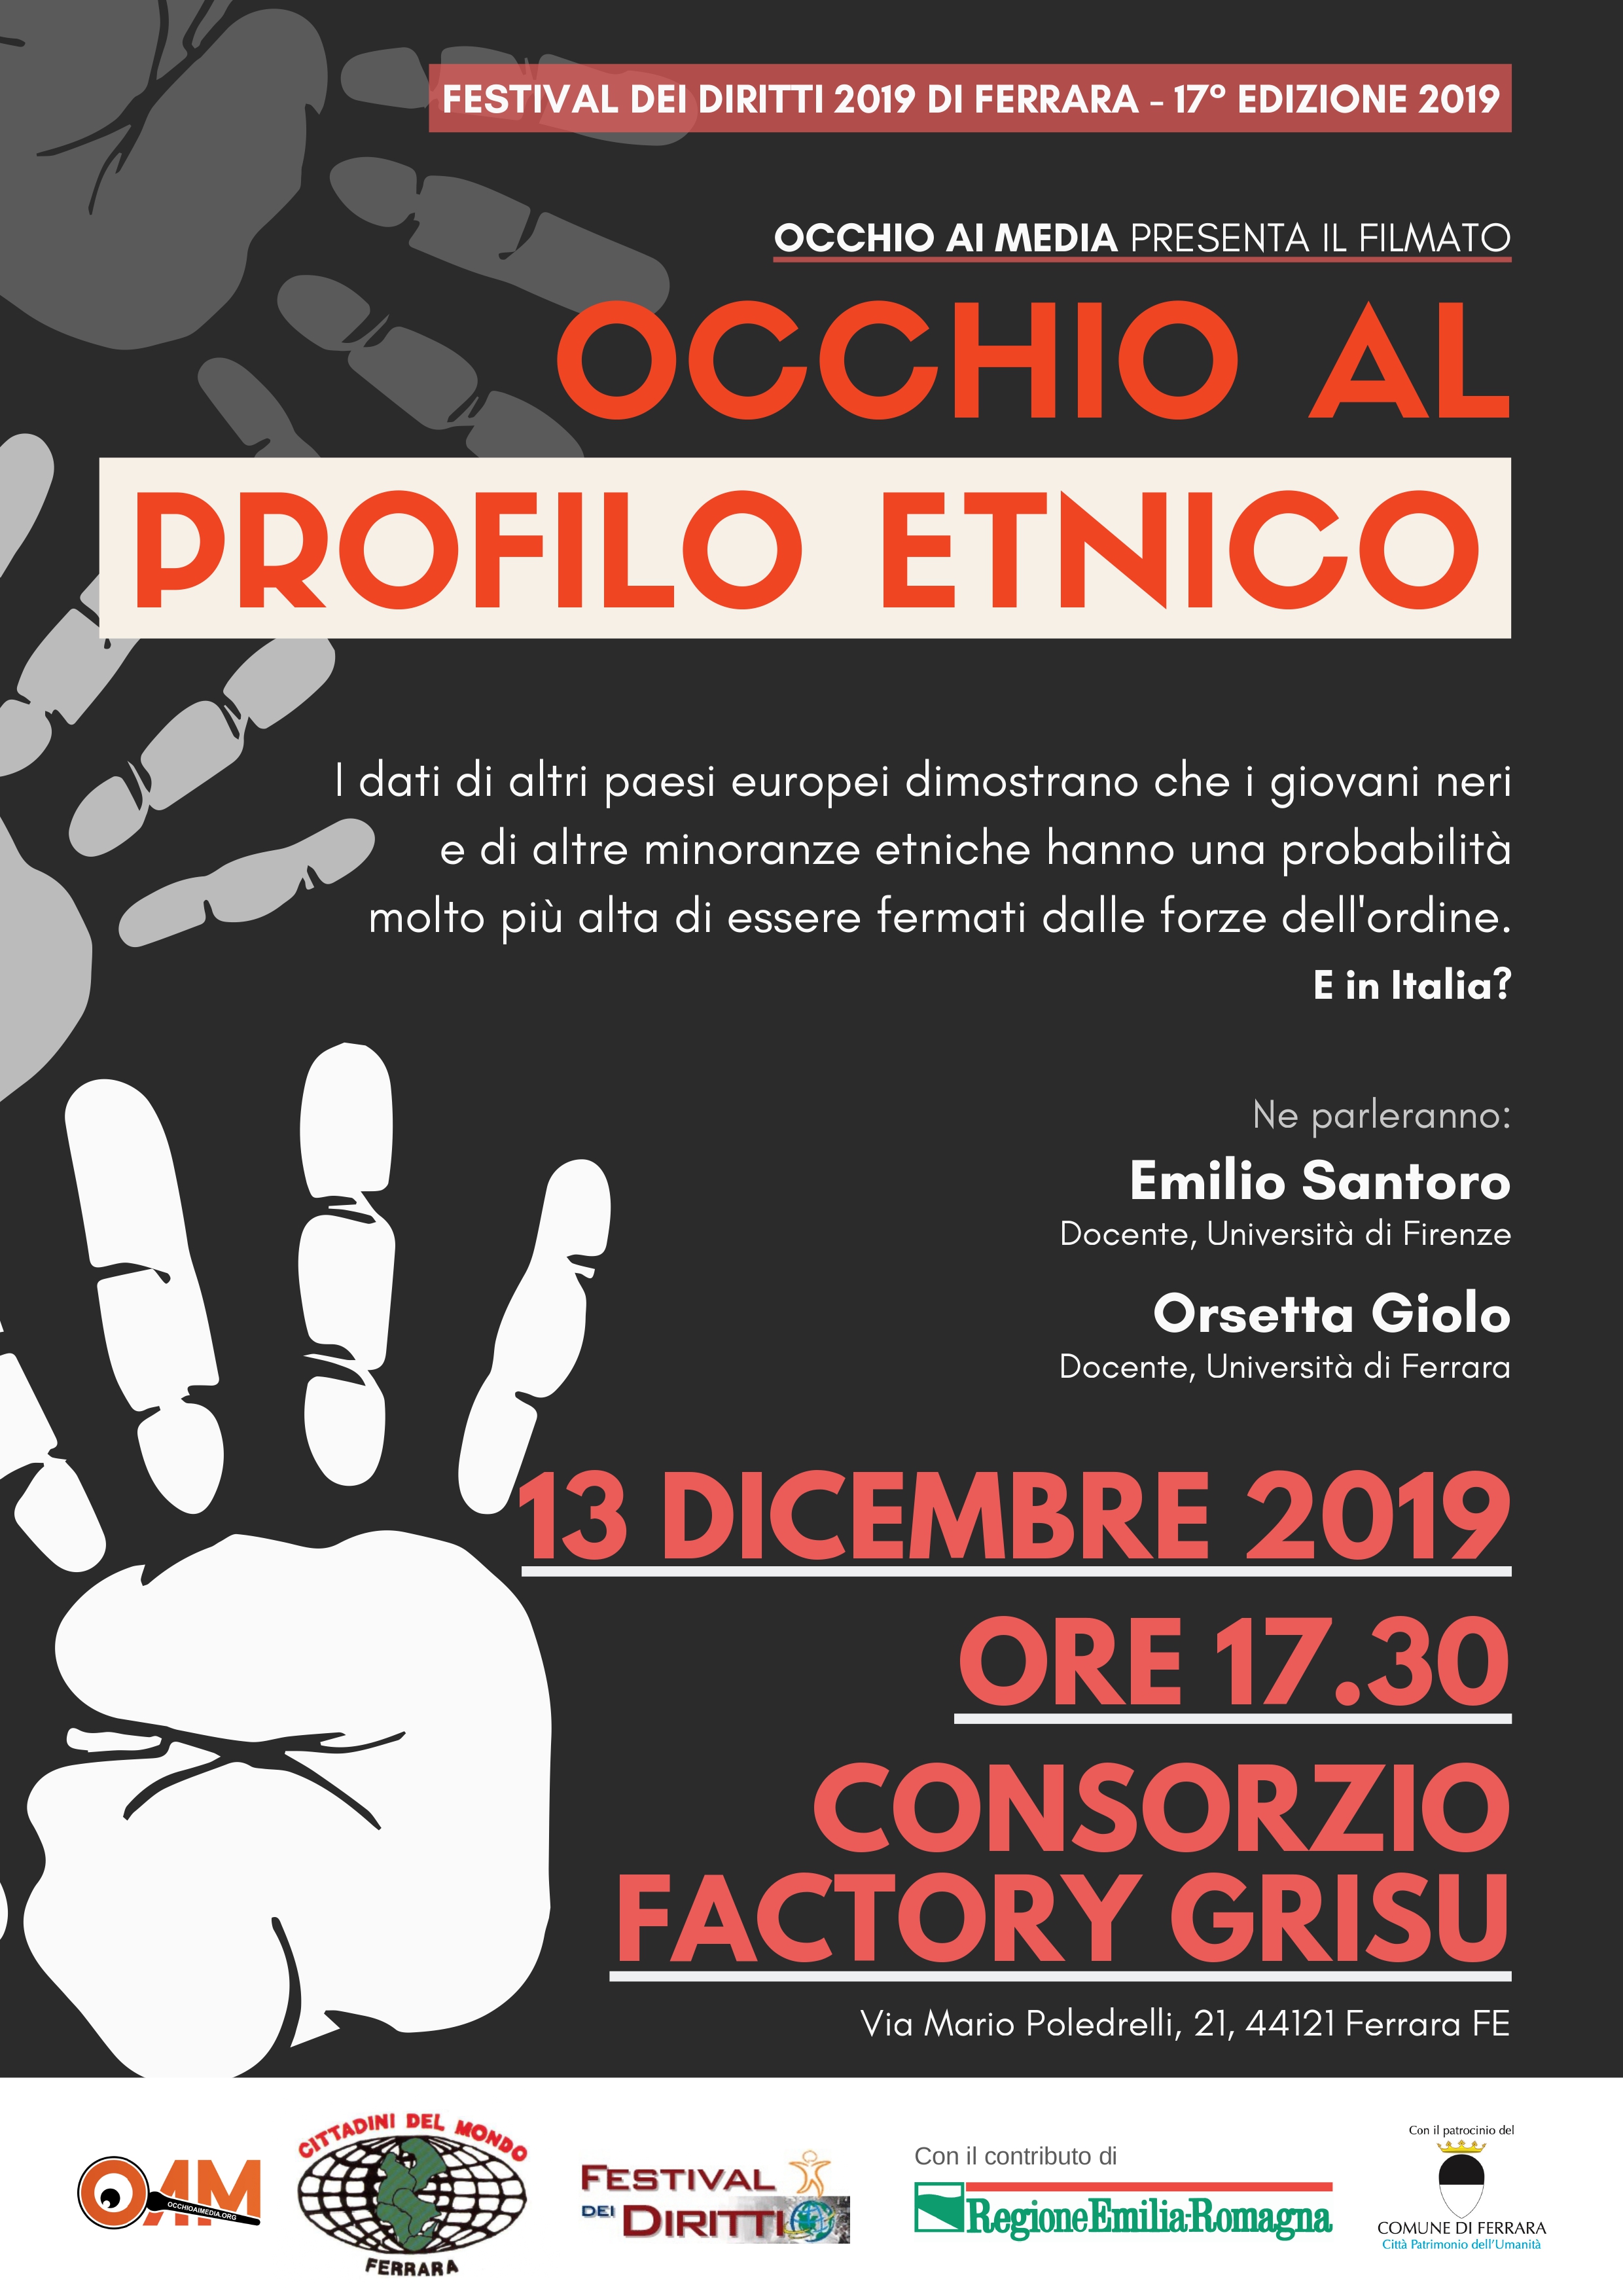 Festival dei Diritti di Ferrara: Occhio al profilo etnico